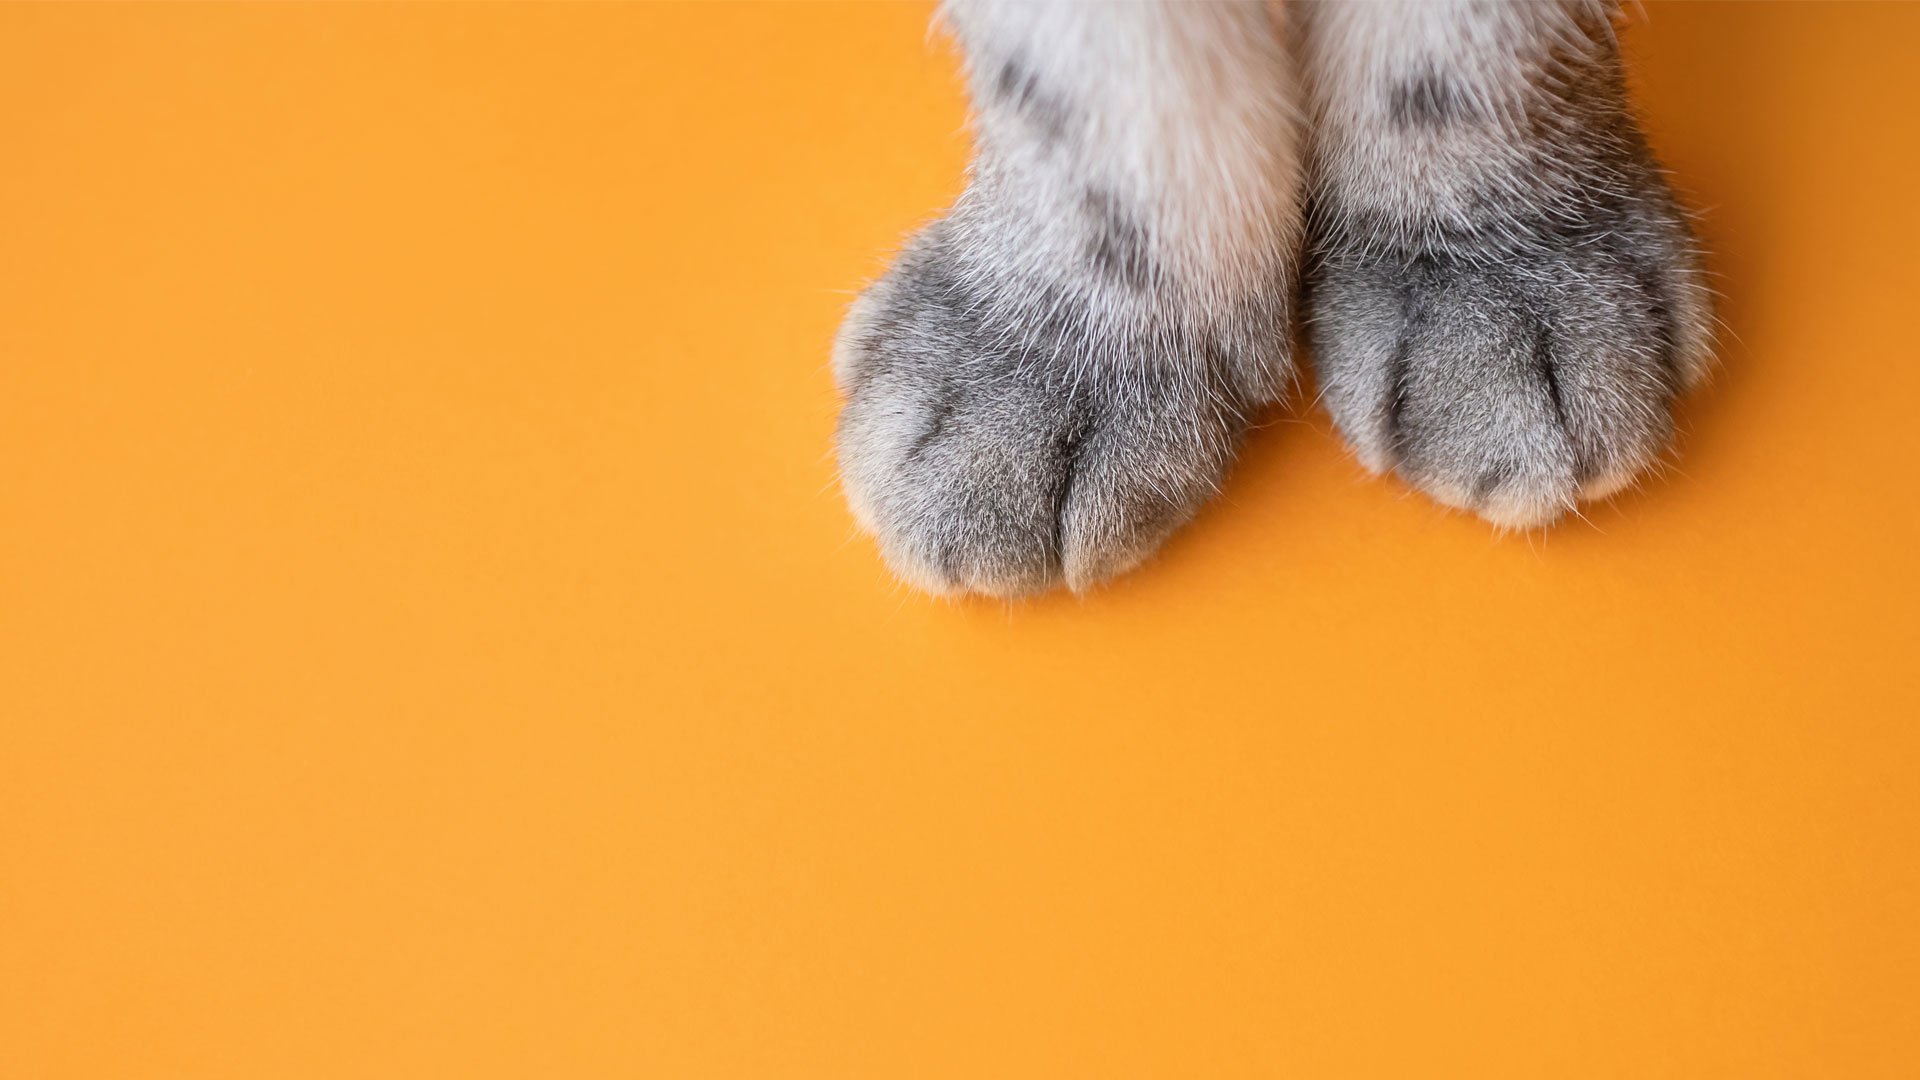 Теплые лапки. Лапа кота. Кот на оранжевом фоне. Фон кошачьи лапки. Лапы кота сверху.